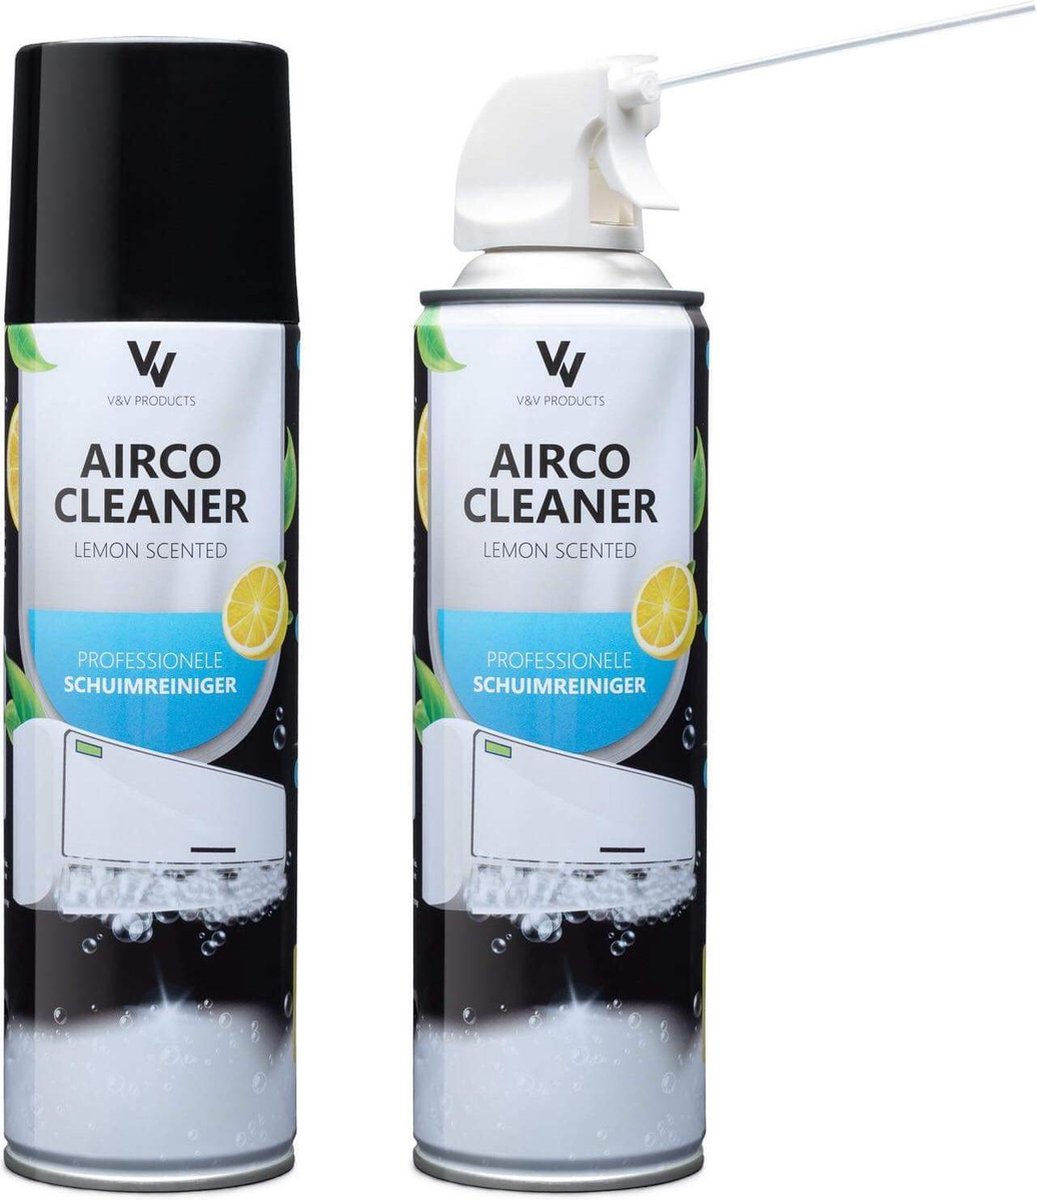 Airco-cleaner citroen 500ml | bol.com